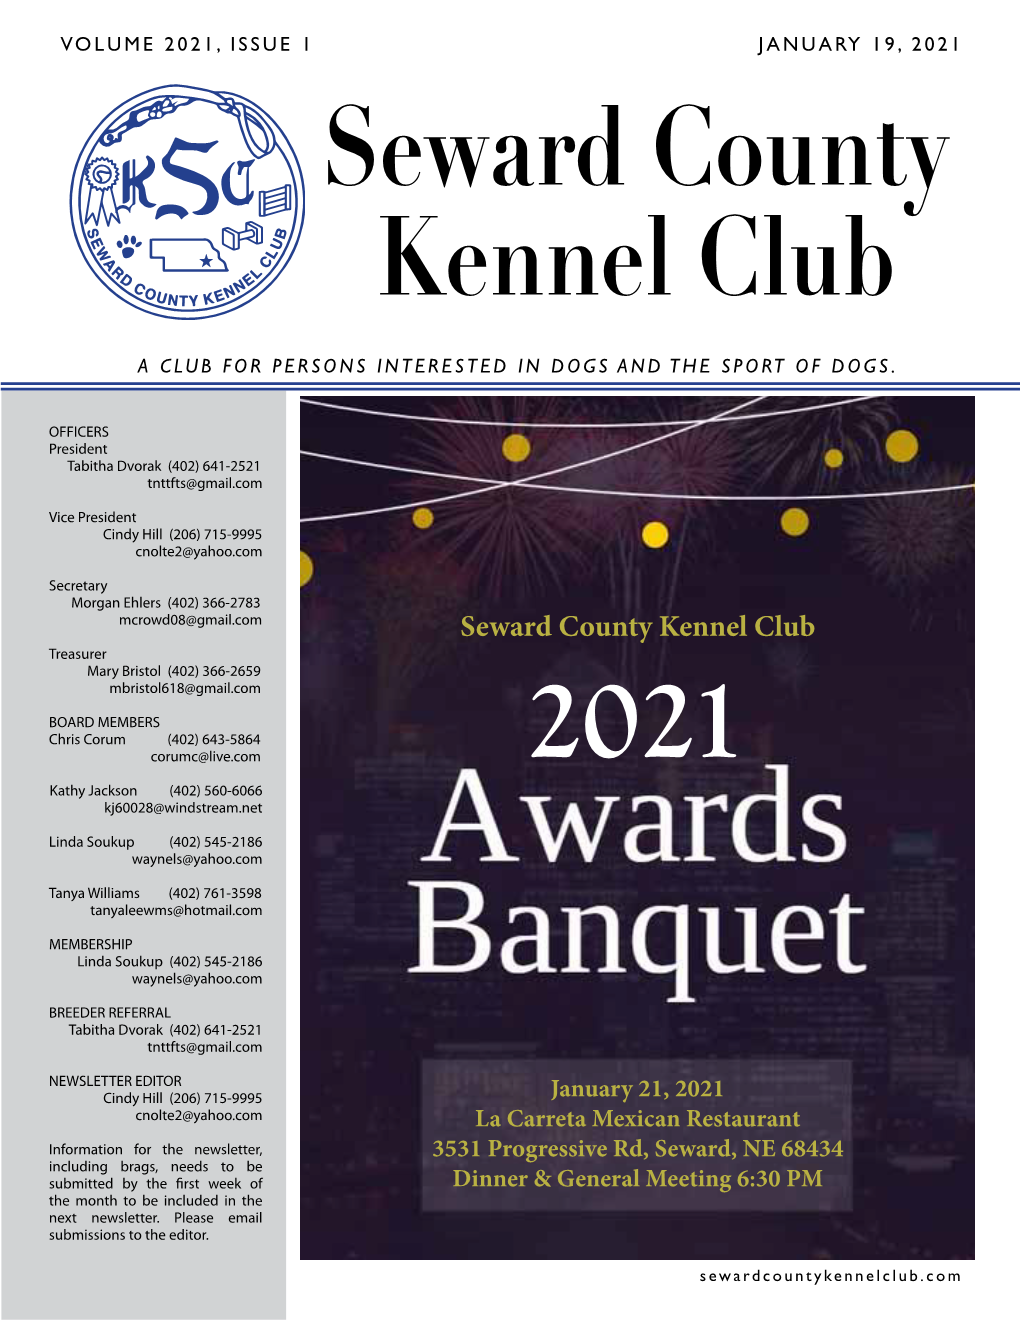 Seward County Kennel Club